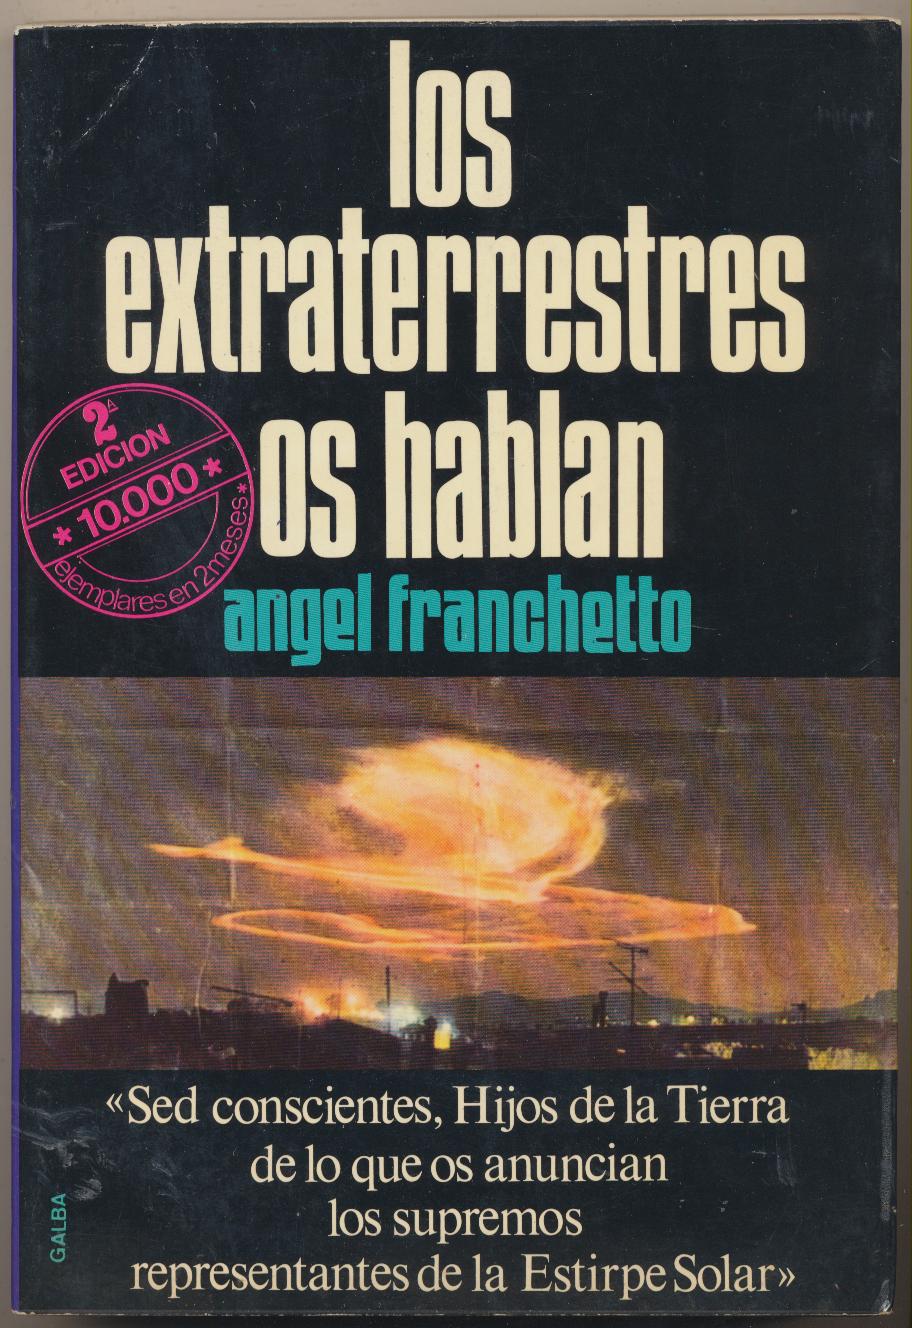 Los Extraterrestres os hablan. Ángel Franchetto. 2ª Edición Galba 1978